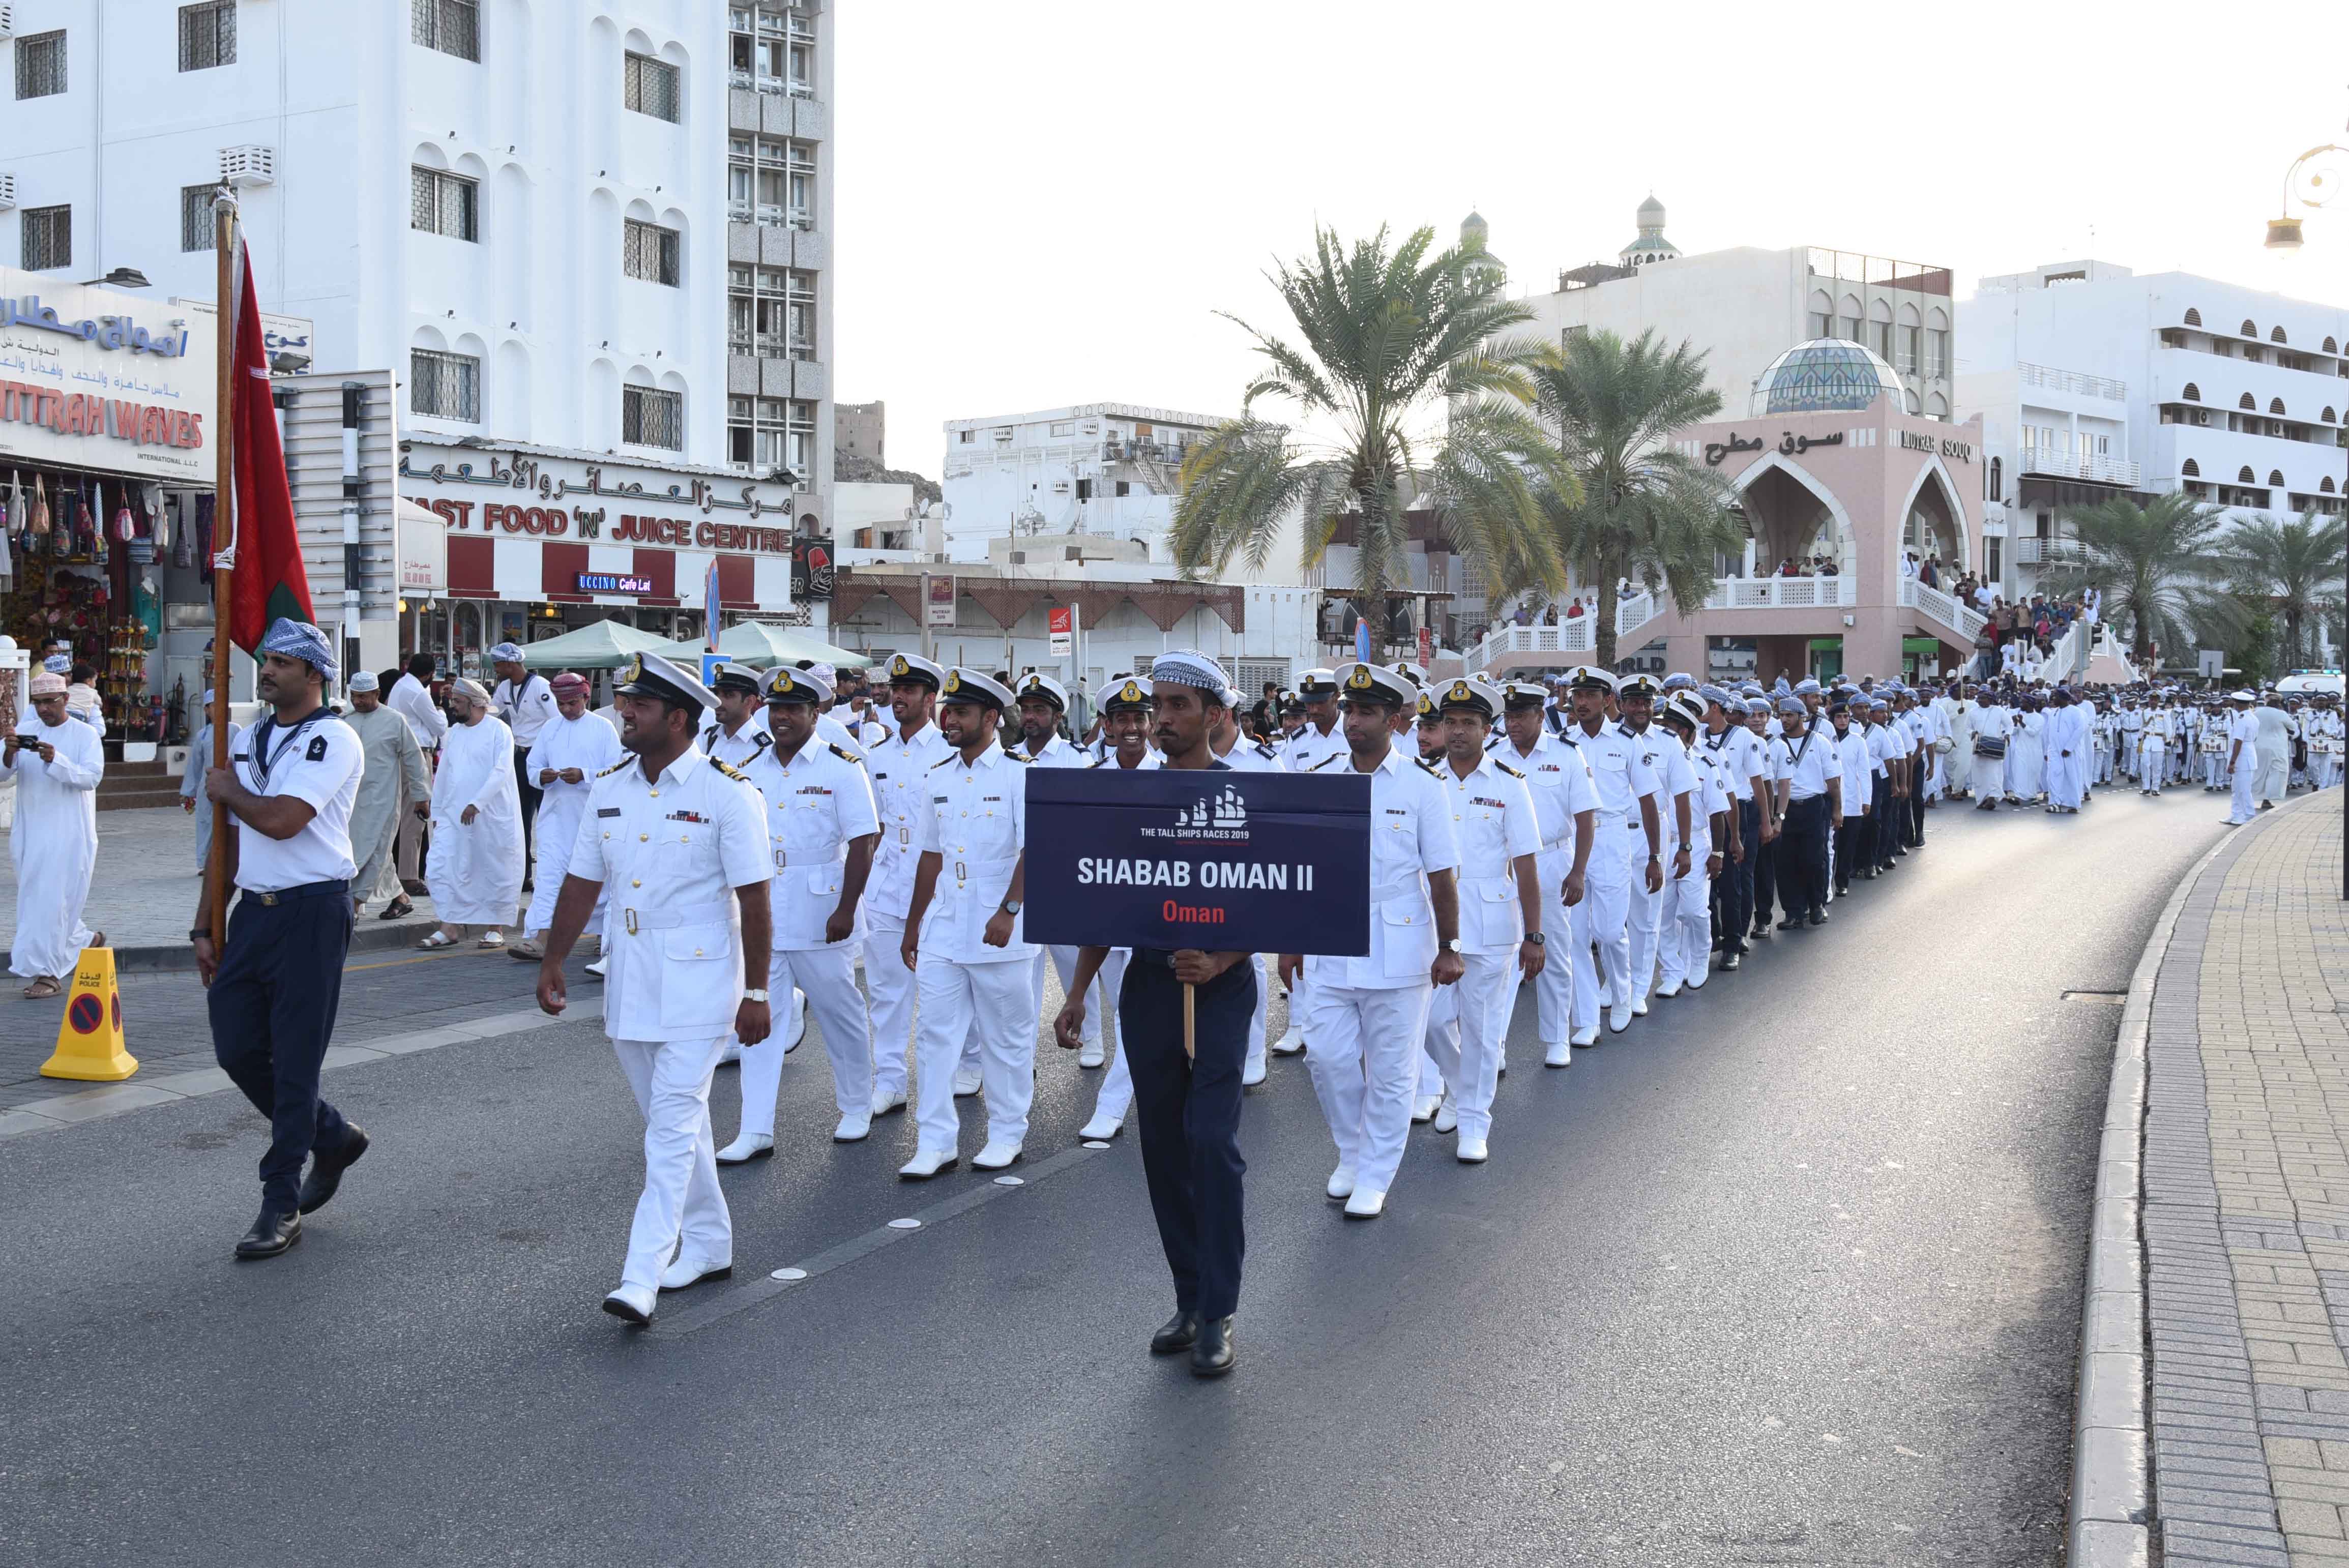 البحرية السلطانية العمانية تنظم مسيرا لطاقم سفينتها "شباب عمان الثانية"